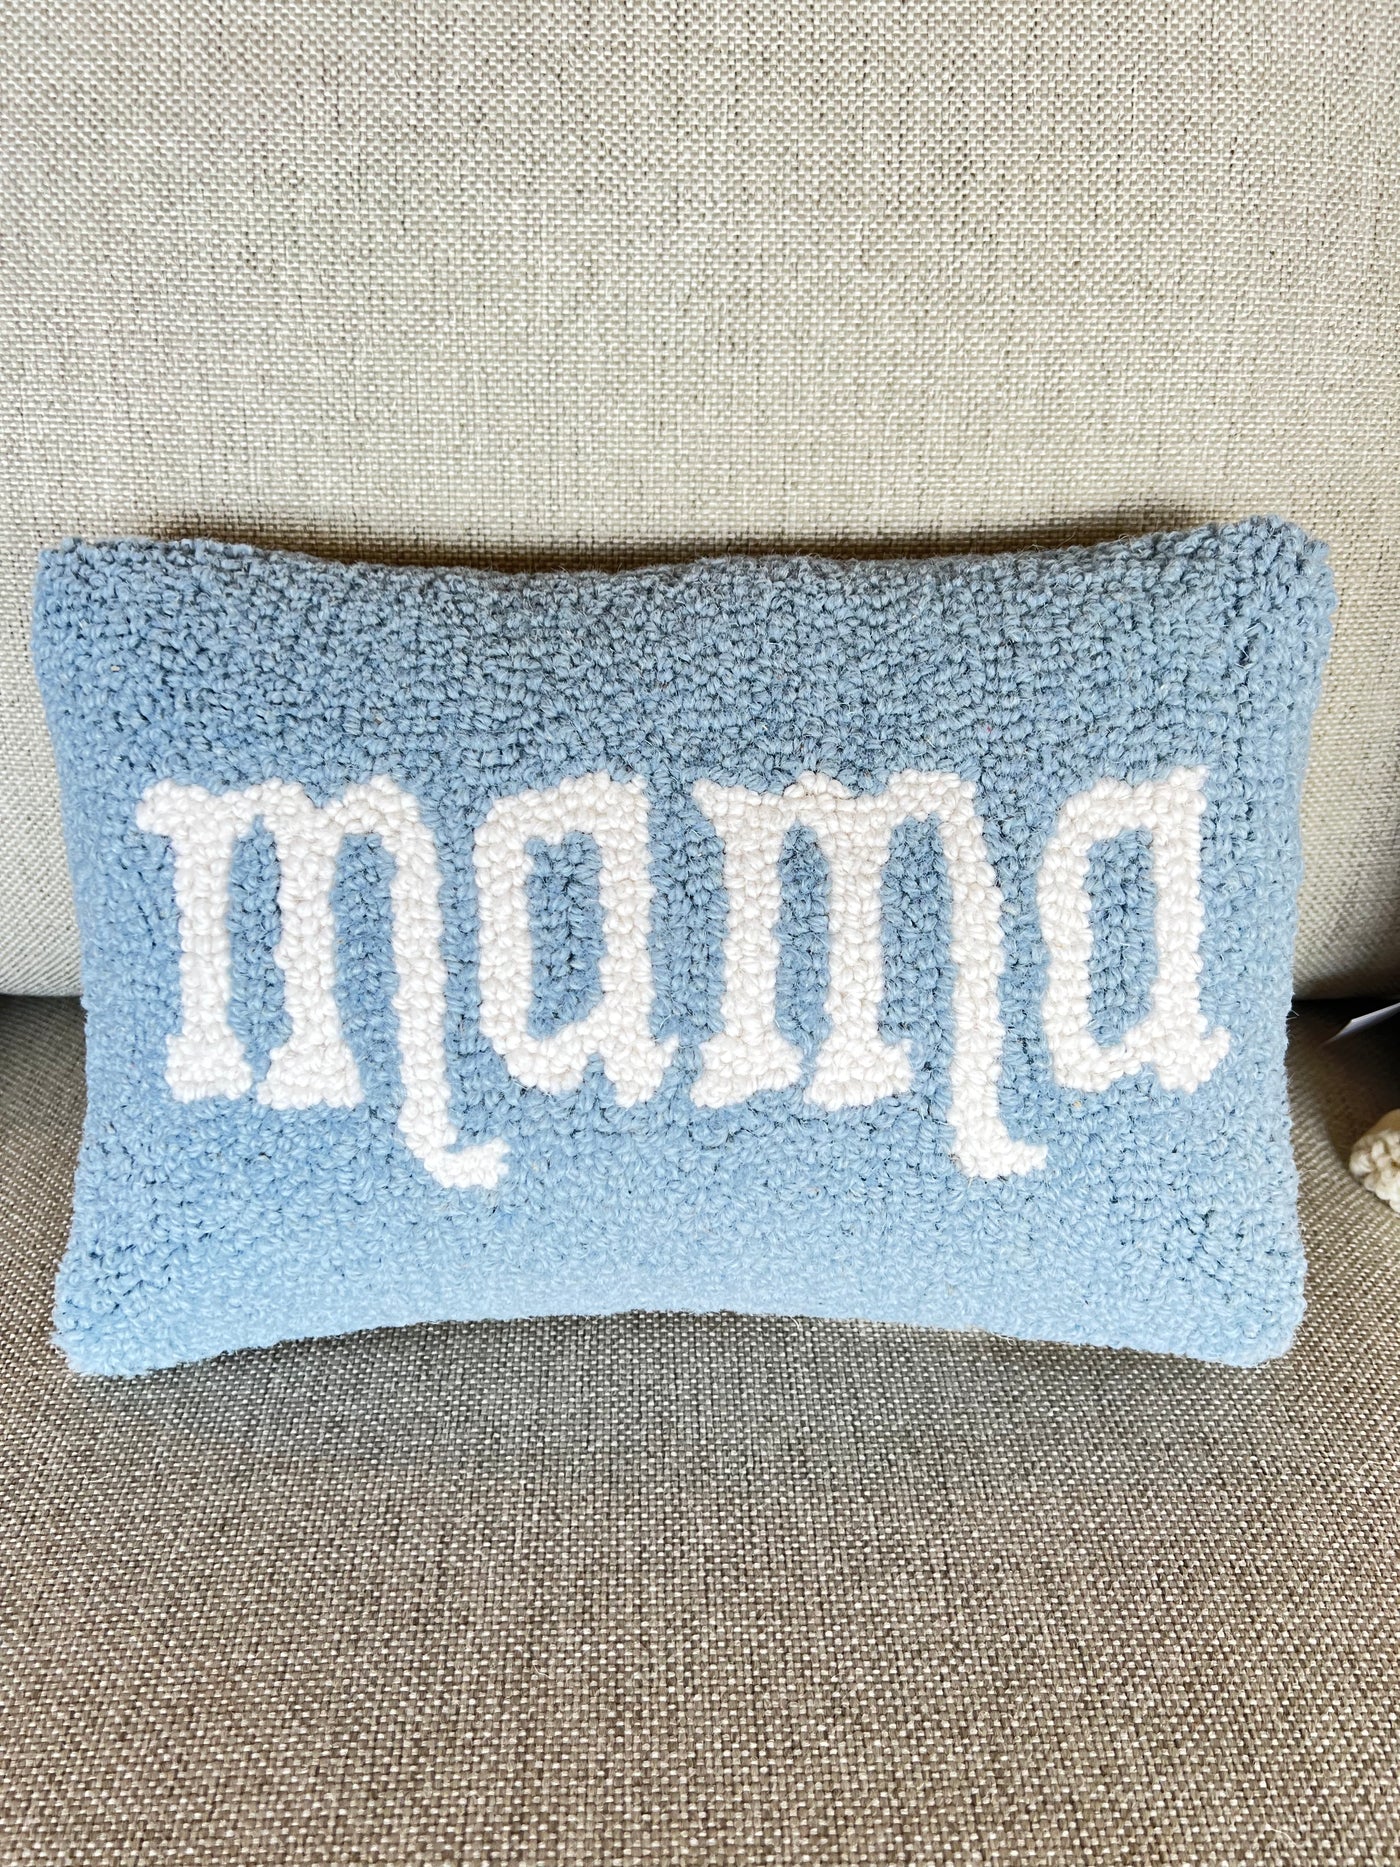 MamaHooked Pillow